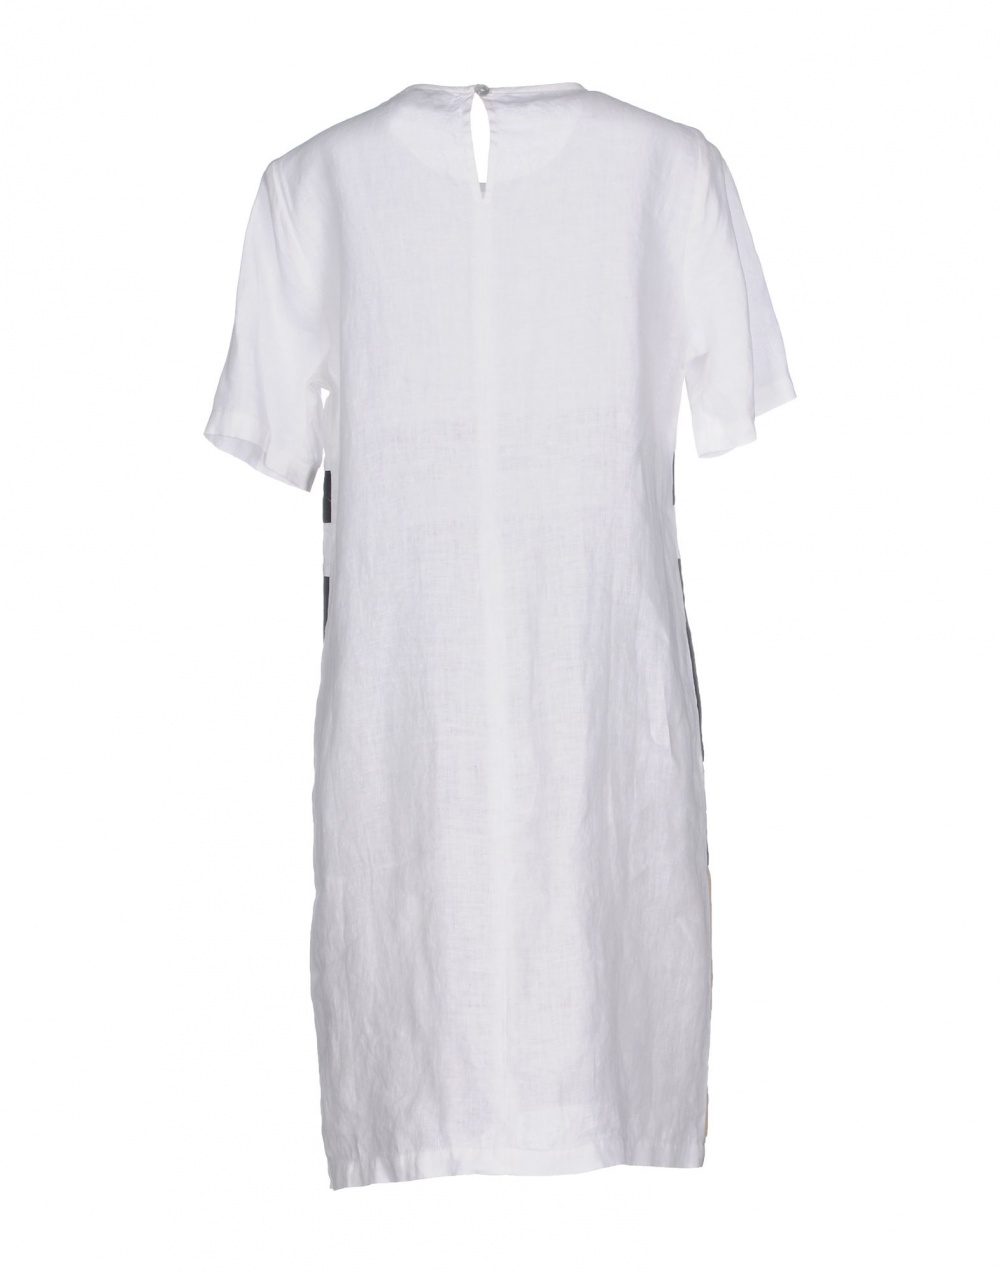 Льняное платье LA FABBRICA del LINO, размер M. На рос. 46-48